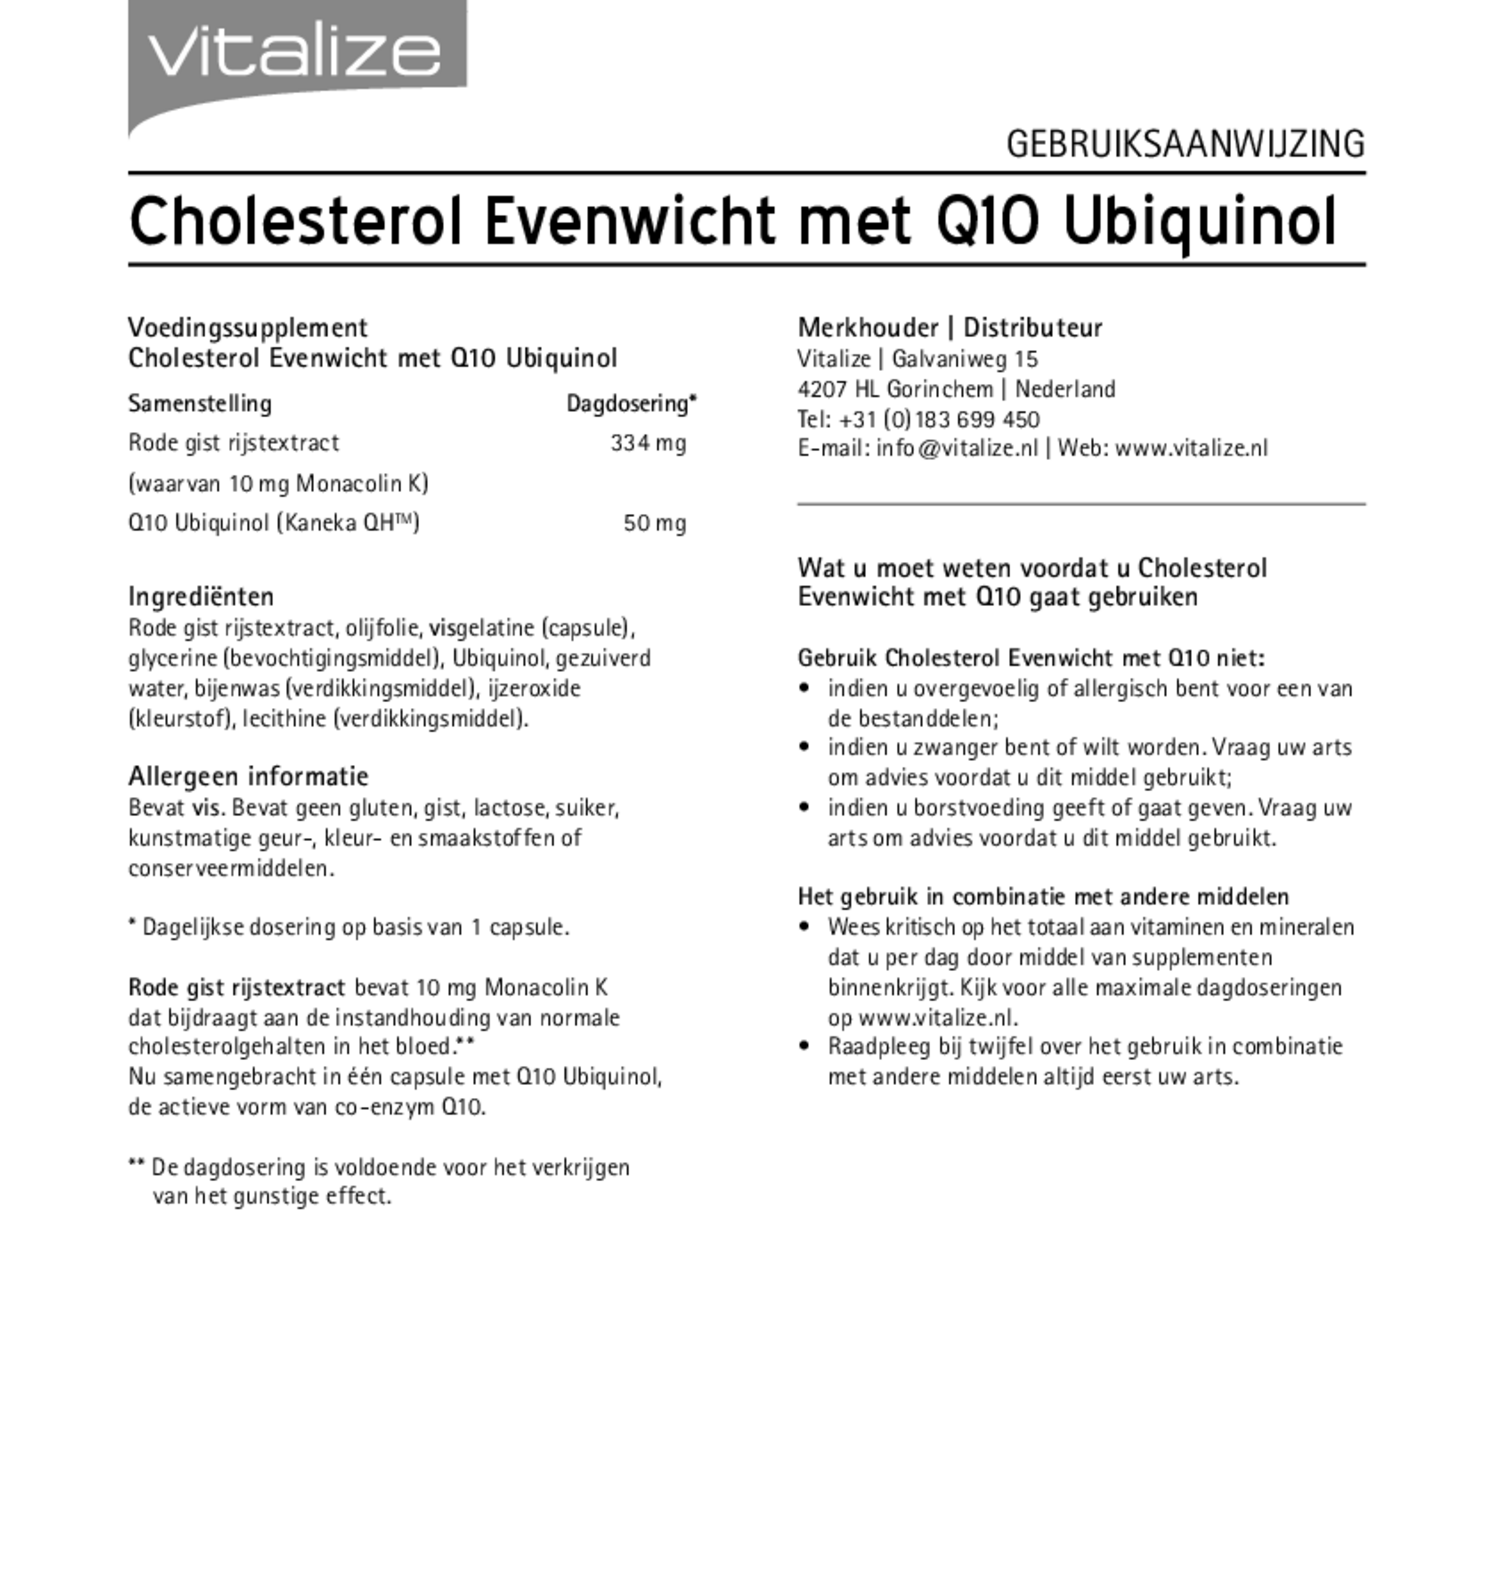 Cholesterol Evenwicht + Q10 Capsules afbeelding van document #1, gebruiksaanwijzing